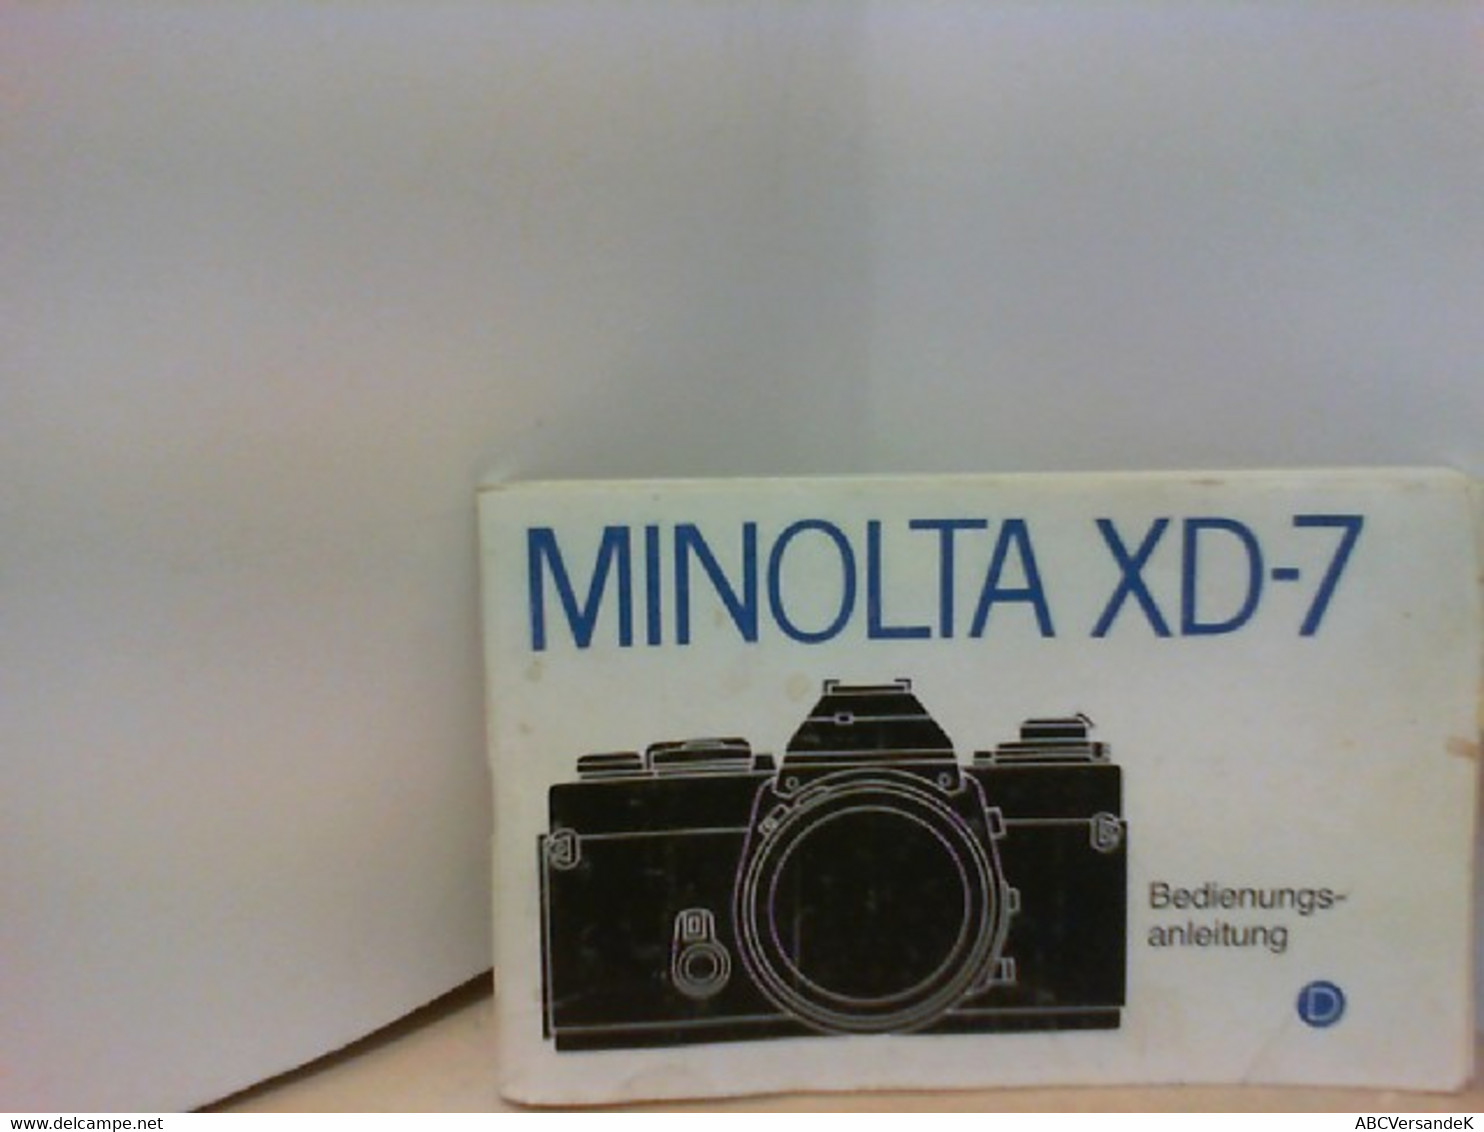 MINOLTA XD - 7 Bedienungsanleitung - Fotografia